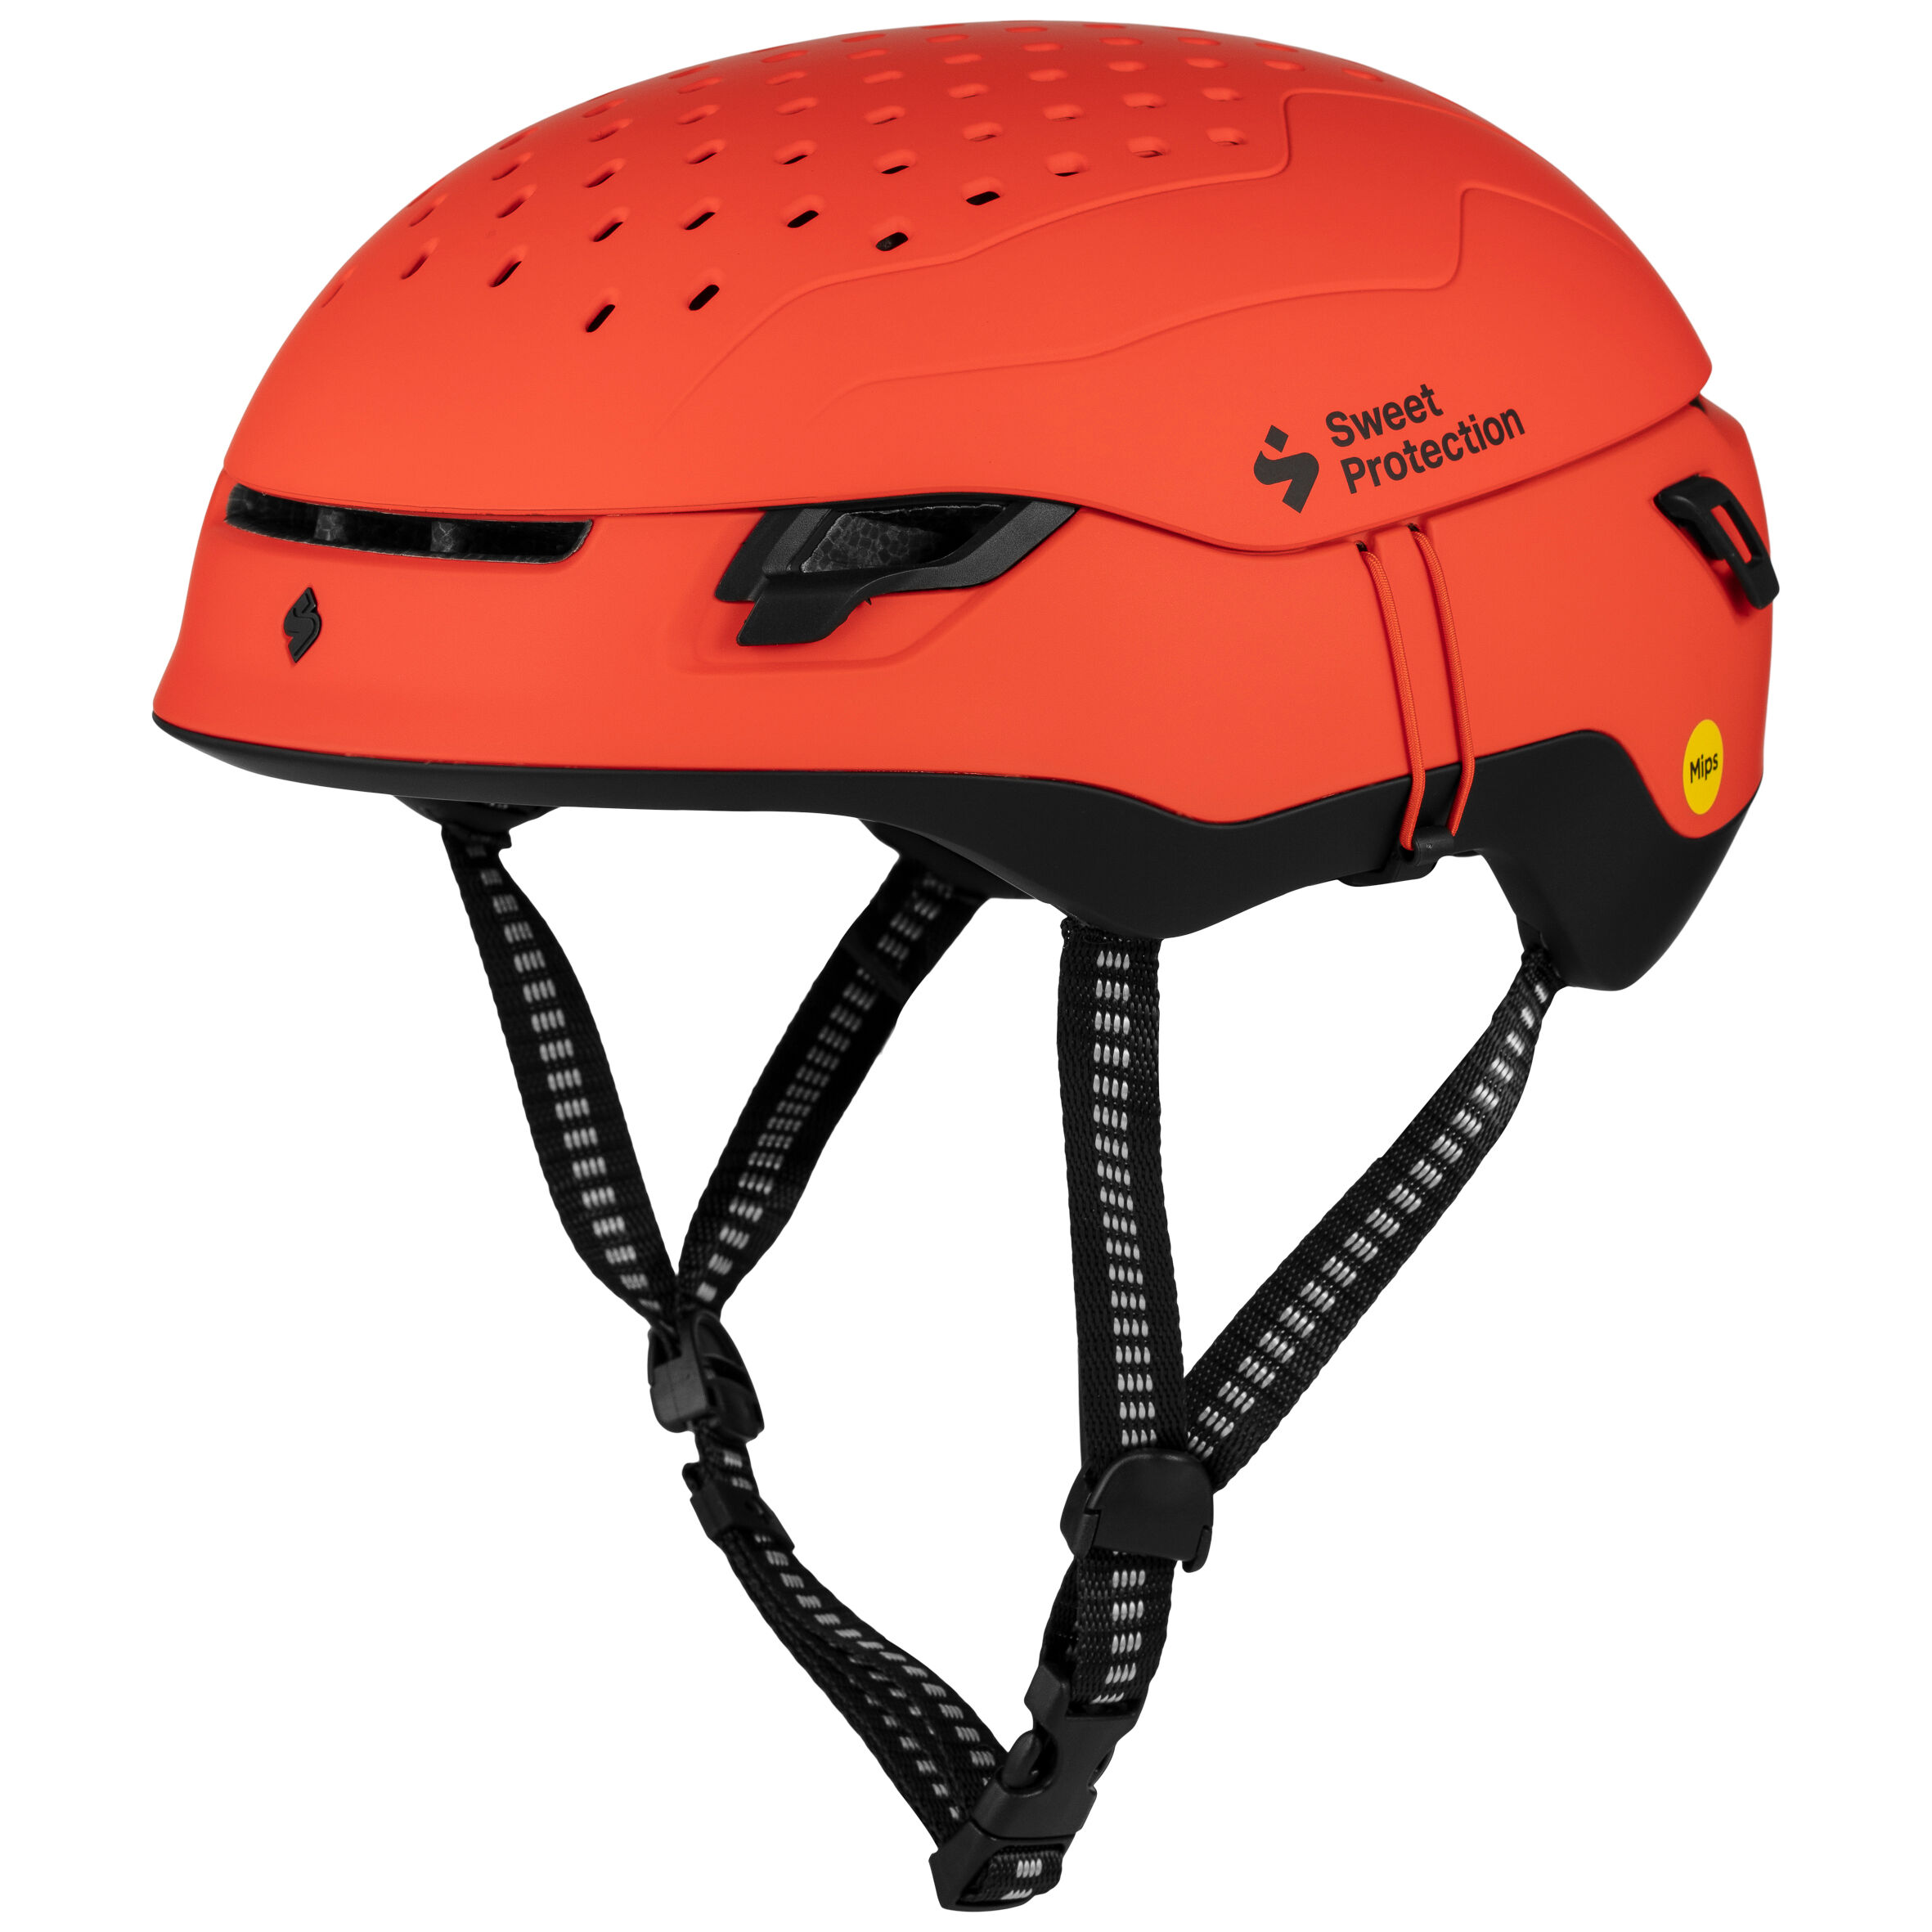 Sweet Protection Ascender MIPS - Ski helmet - Men's